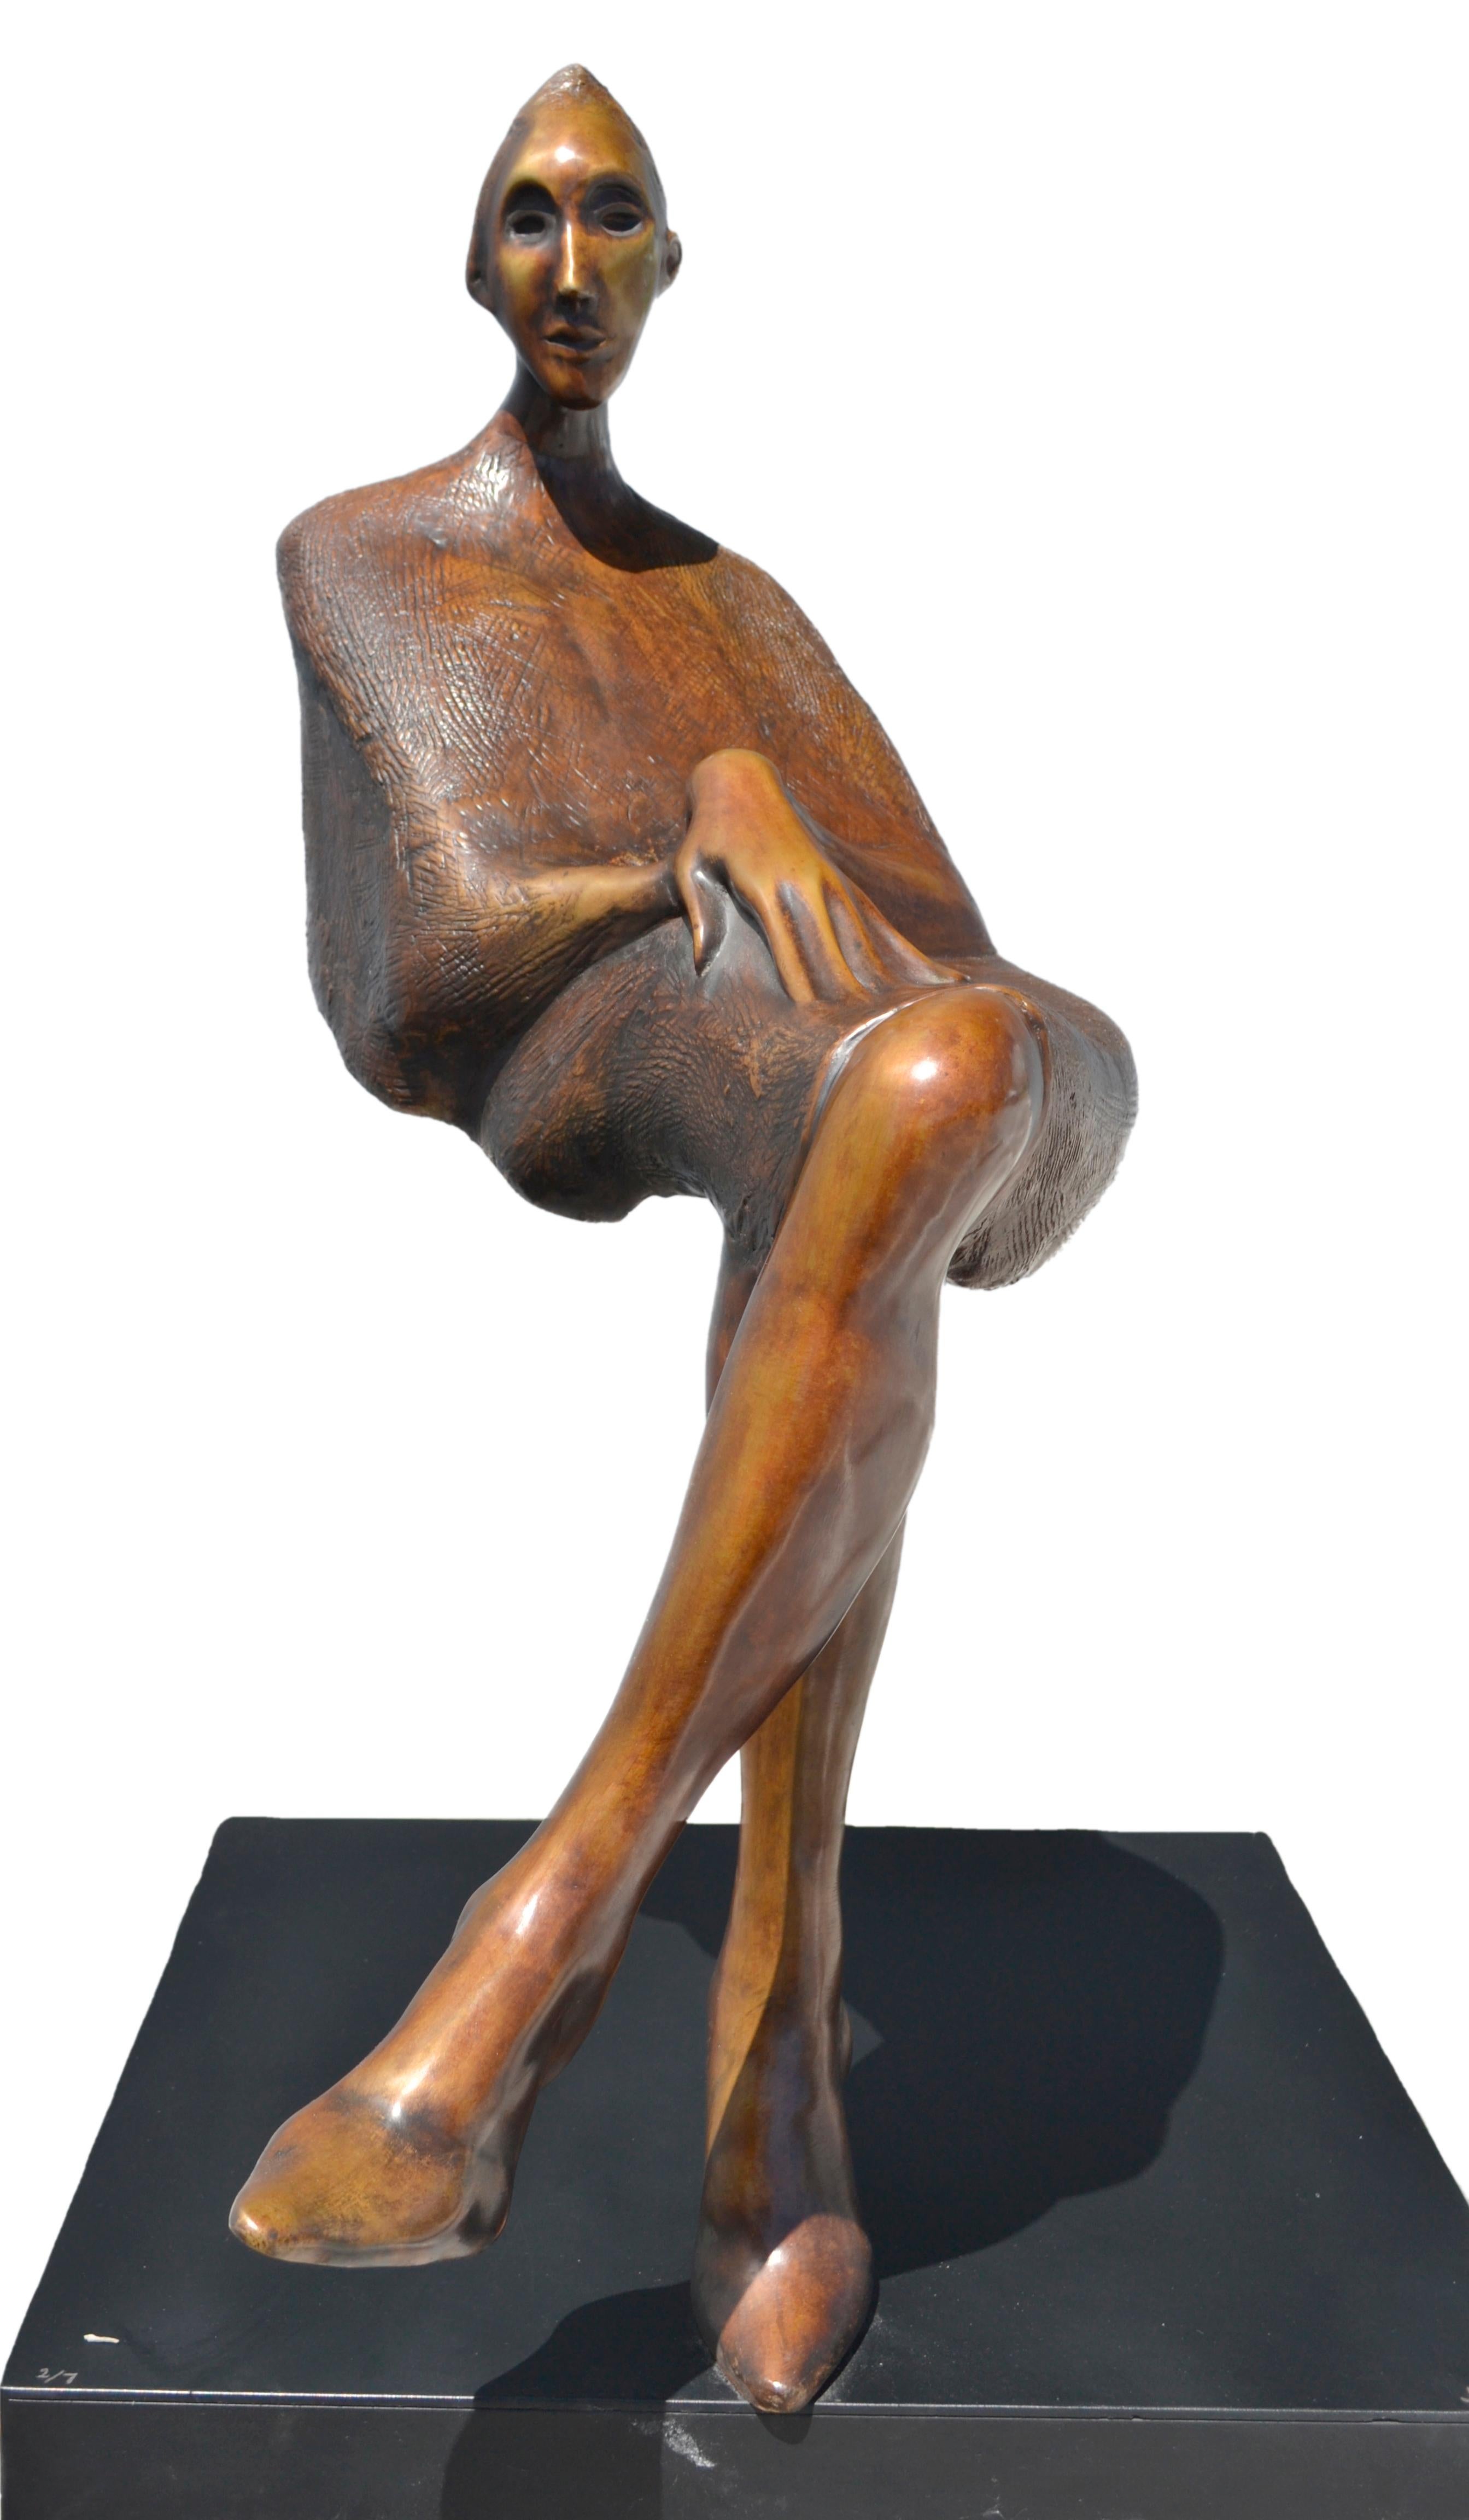  Jorge Segu,  Ilusion silla, 2000, Bronze, Auflage von 7, 78 x 90 x 33 cm  (Zeitgenössisch), Sculpture, von Jorge Seguí 